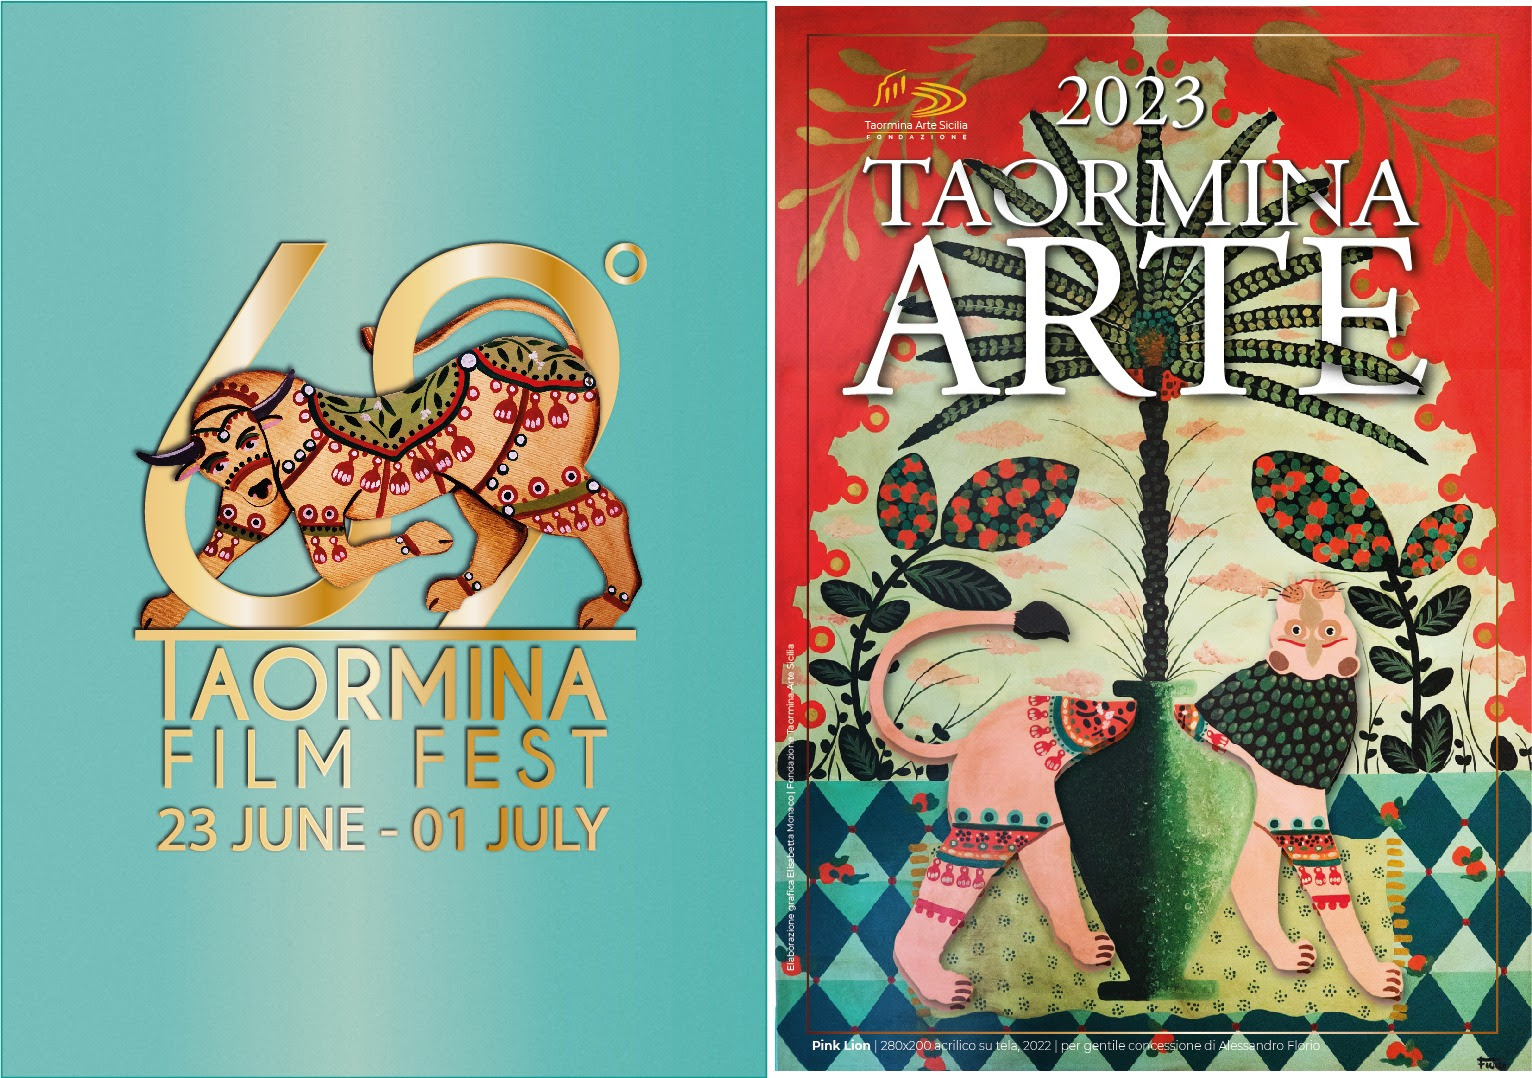 Al via la 69ma edizione del Taormina Film Fest: annunciati gli ospiti